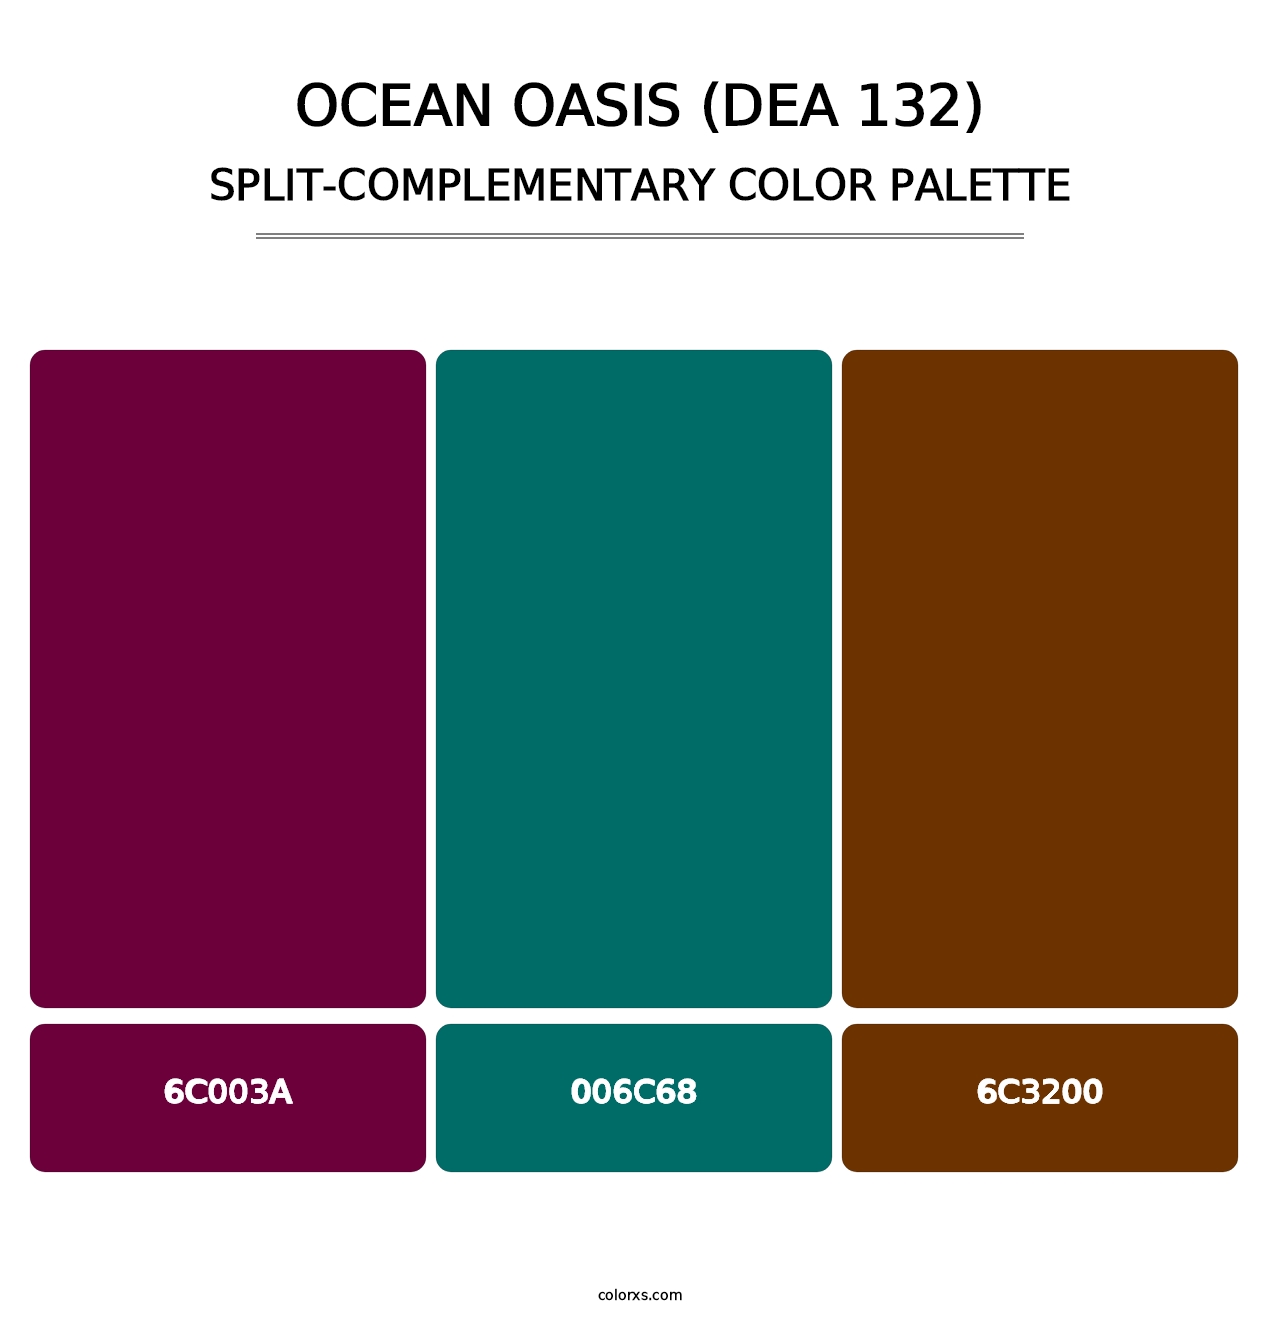 Ocean Oasis (DEA 132) - Split-Complementary Color Palette